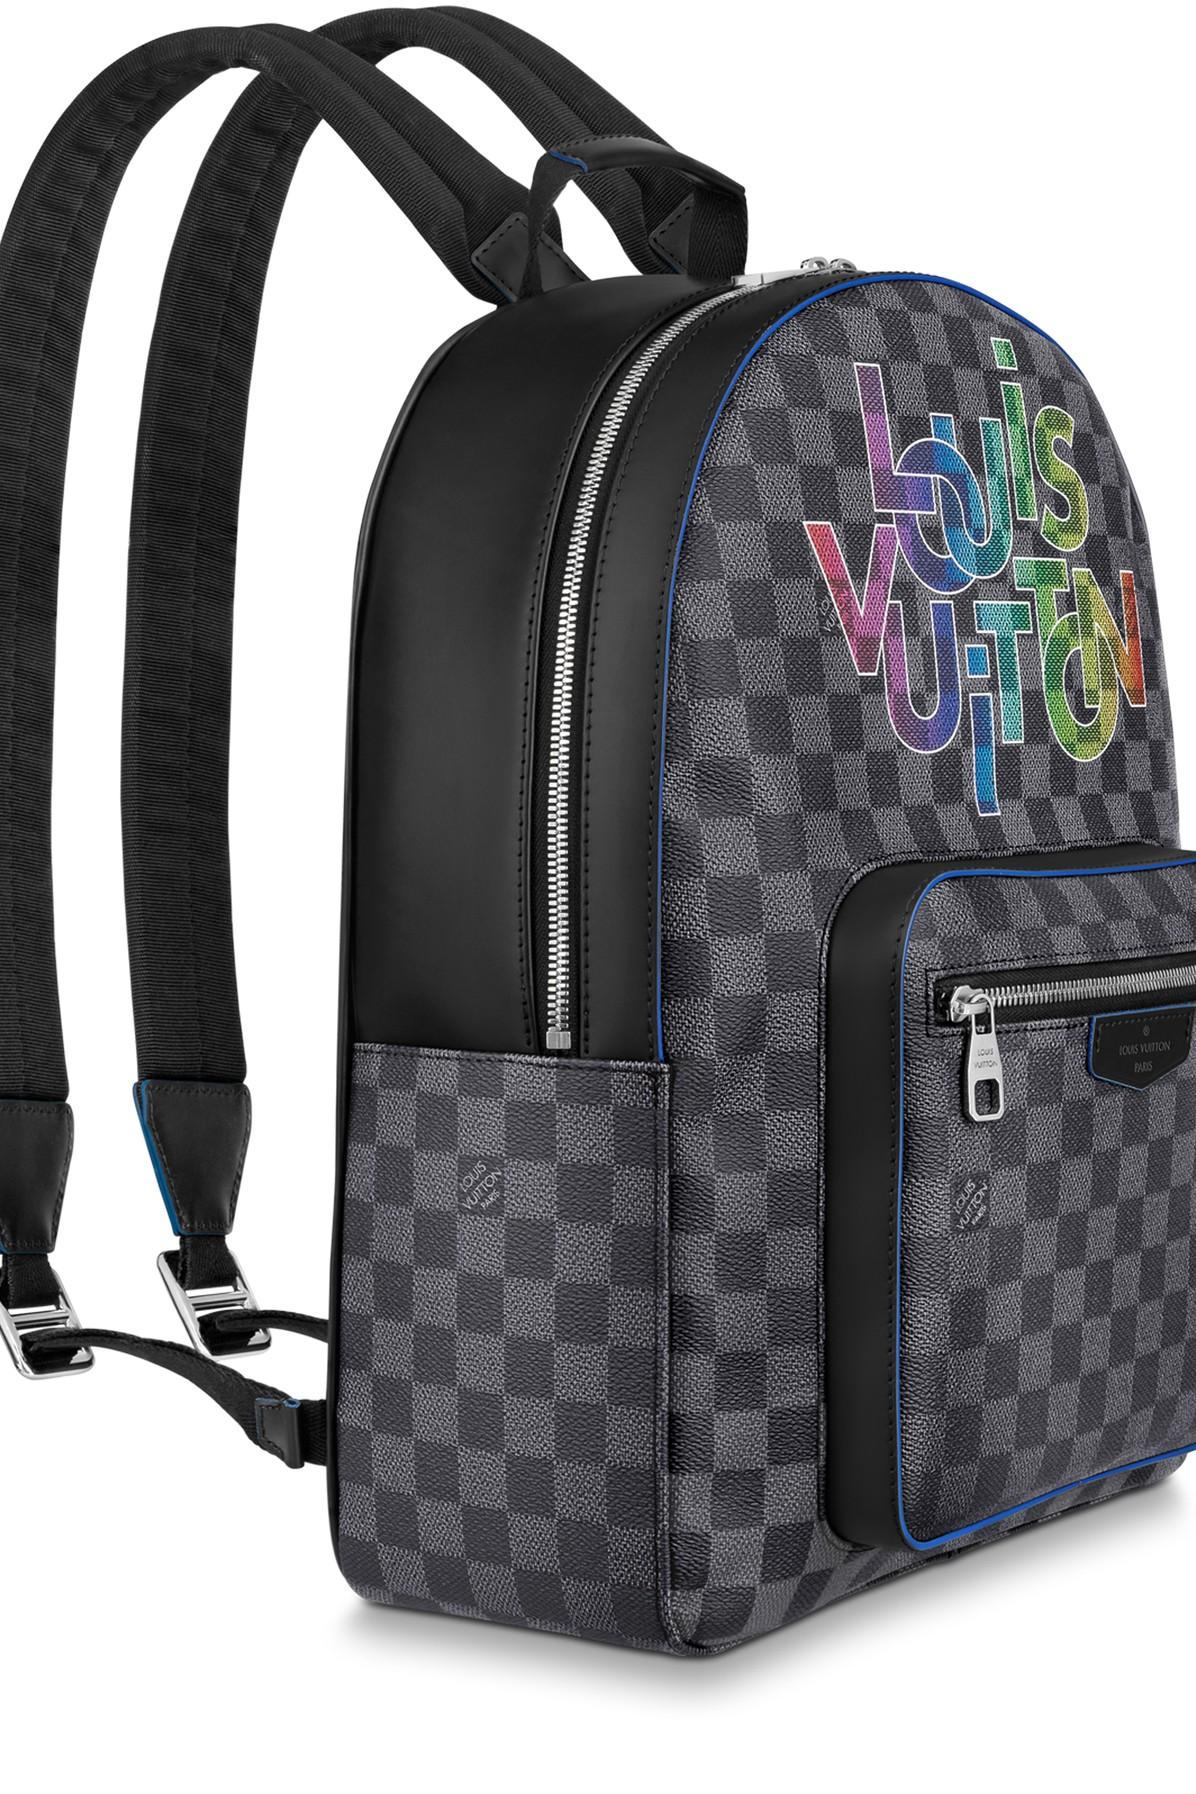 graphite backpack josh